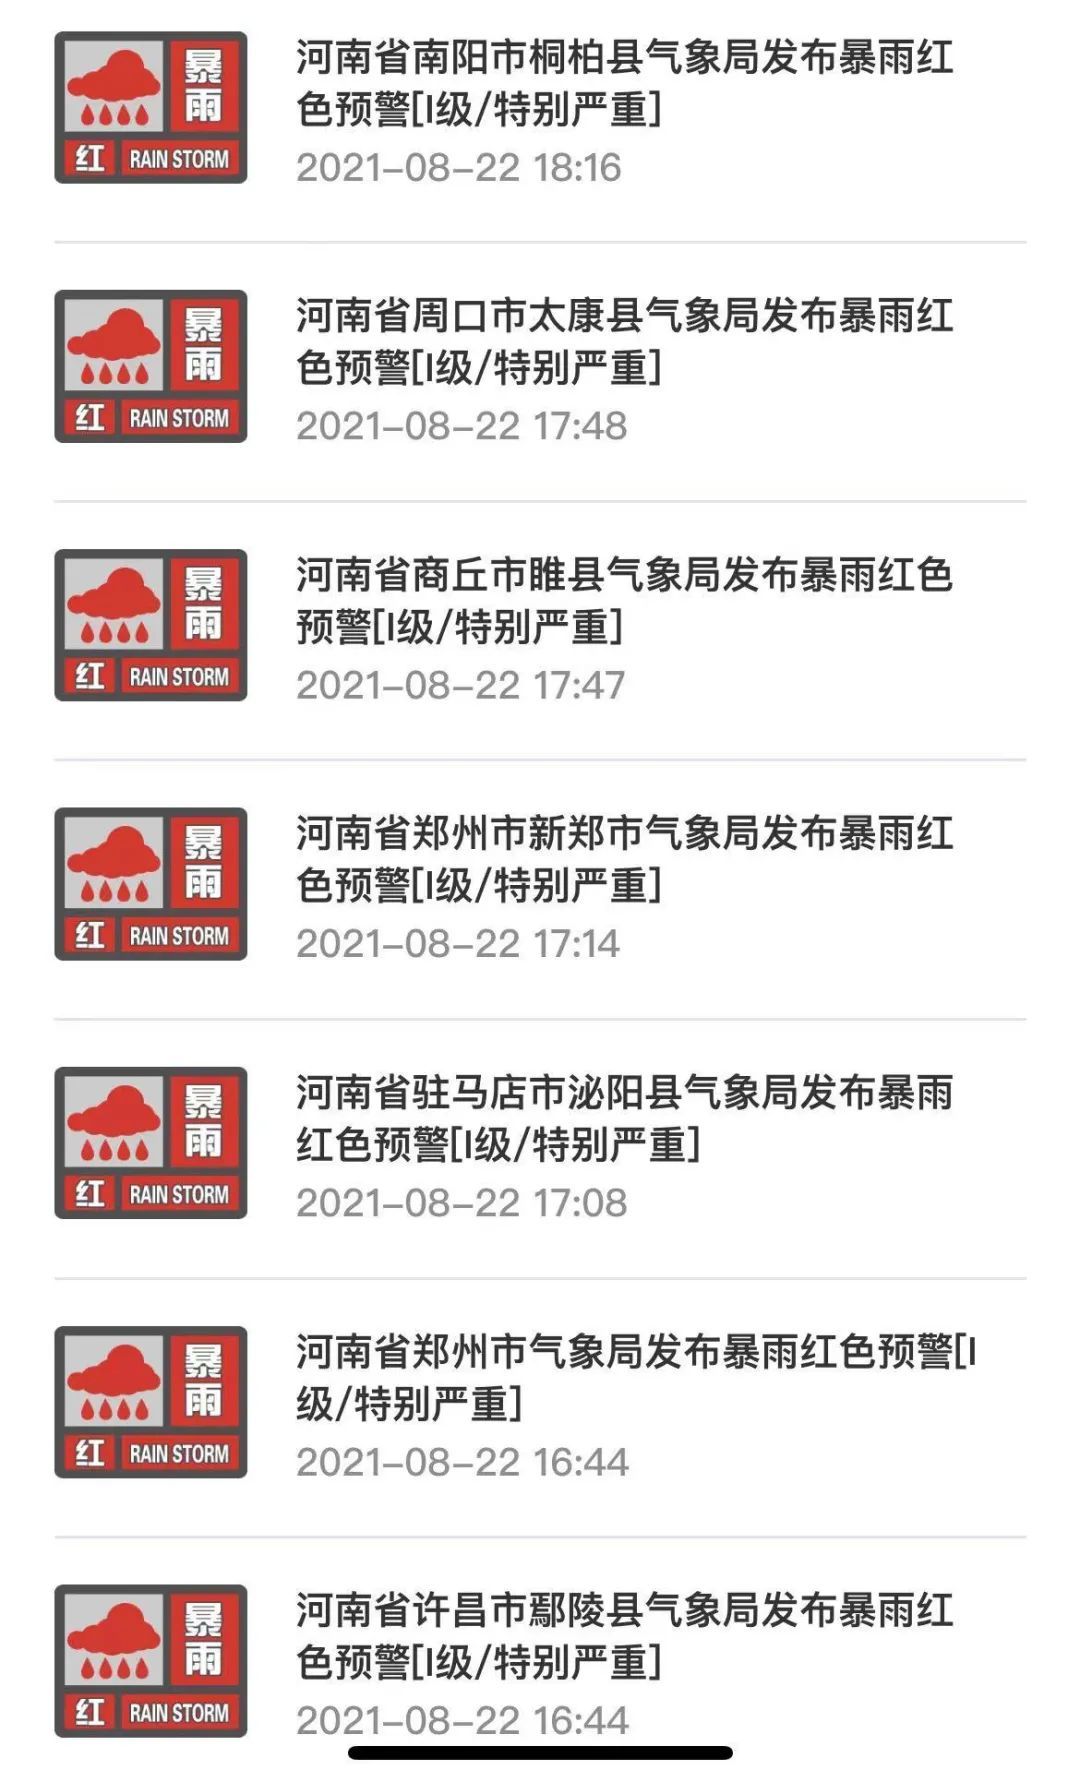 23个红色预警！本轮降雨暴雨中心也在郑州，多地要求停工停产停业停运！这些地方的小伙伴也要注意…